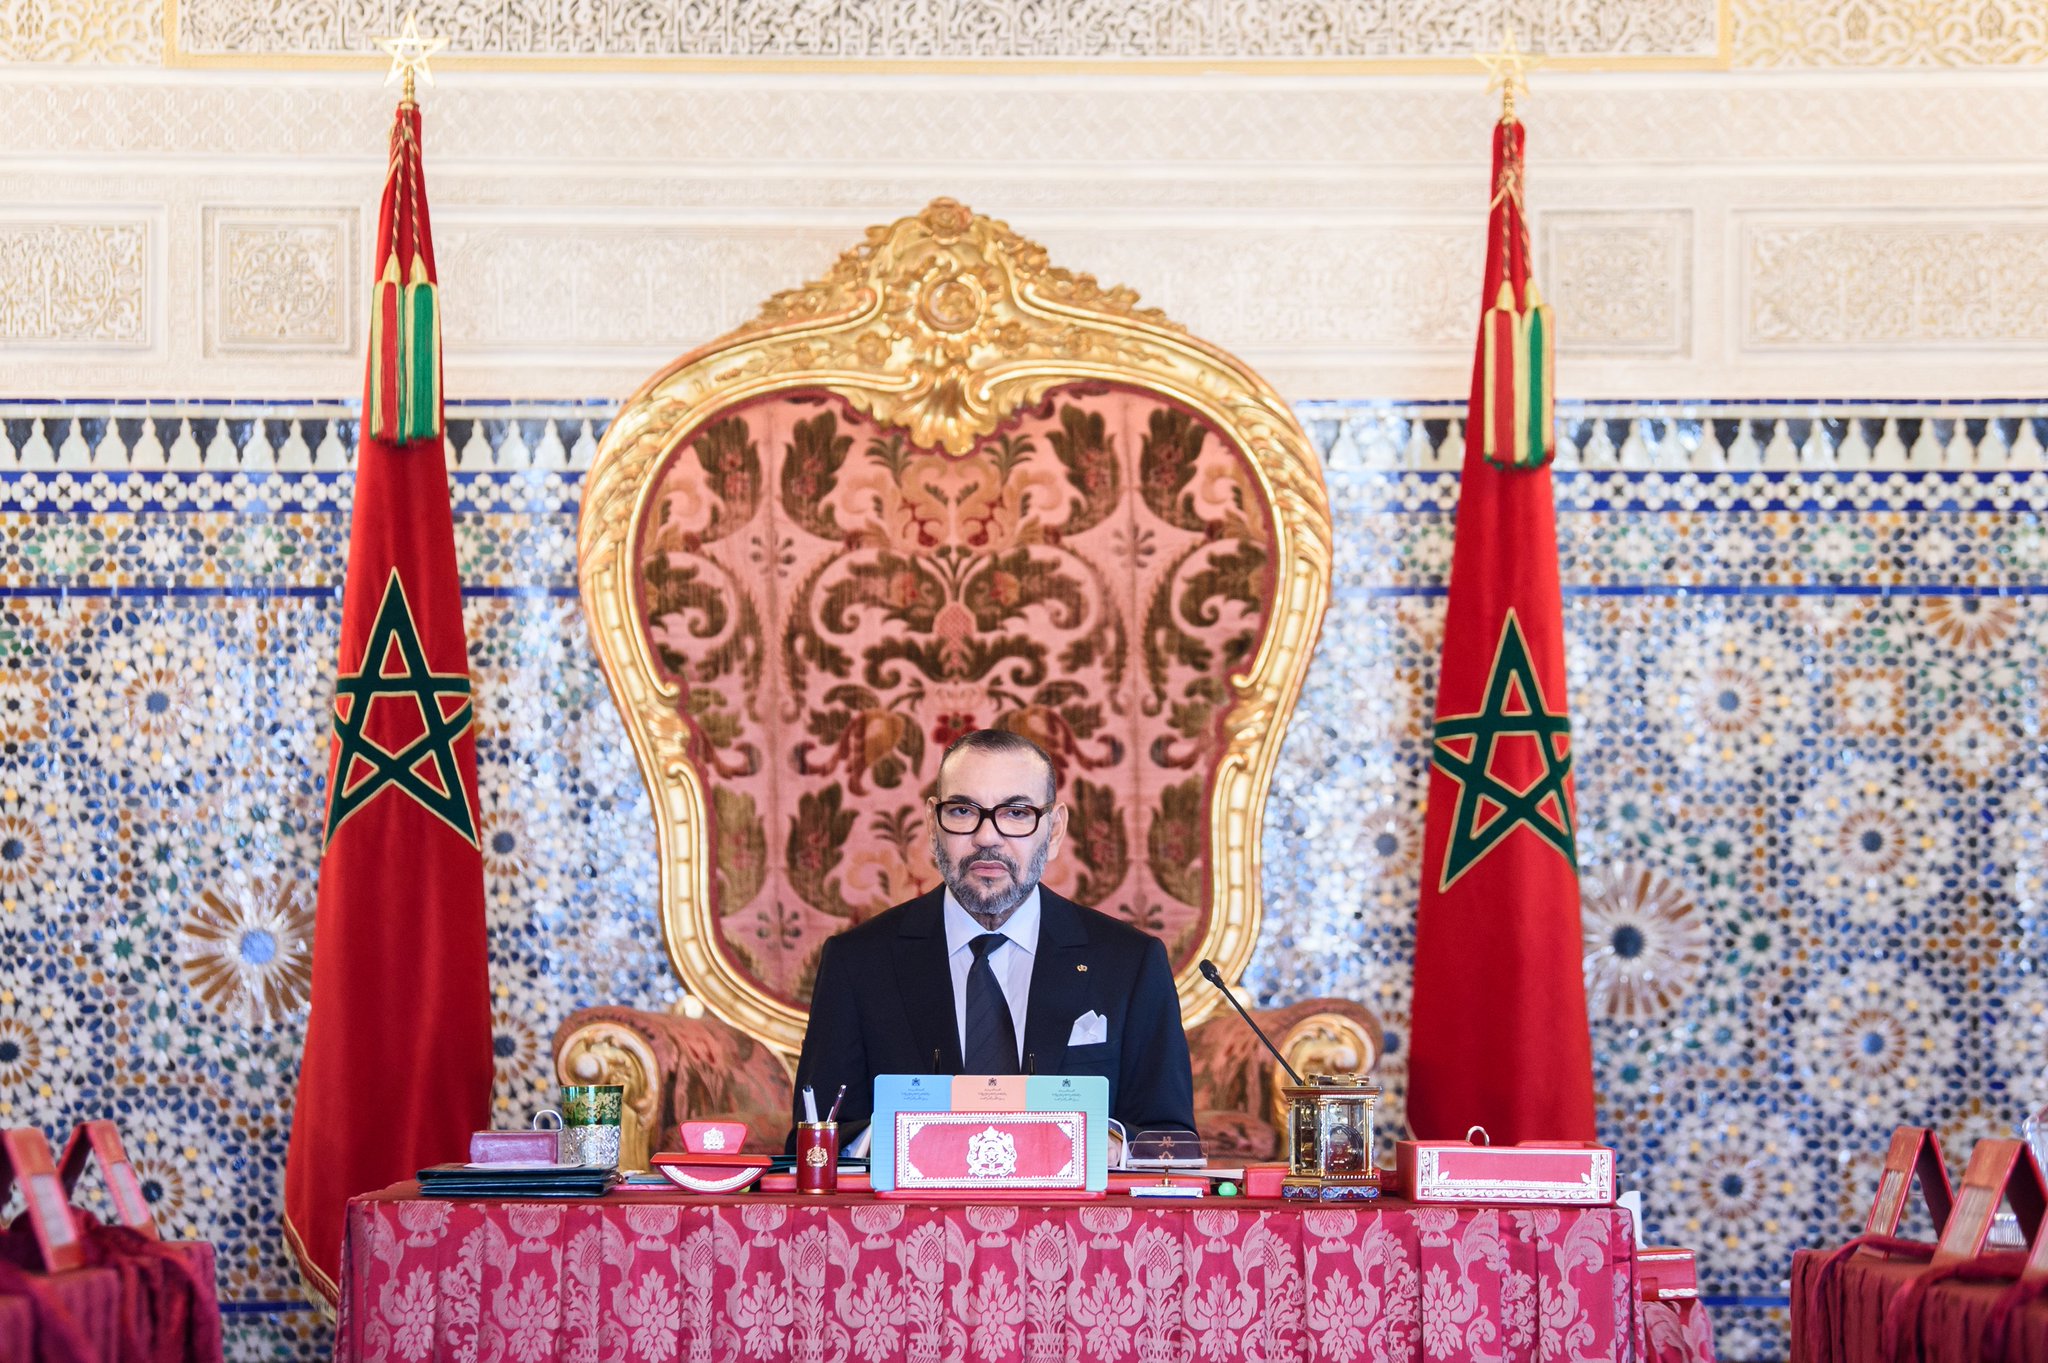 جلالة الملك محمد السادس يترأس مجلساً وزارياً ويعين عدداً من الولاة والعمال